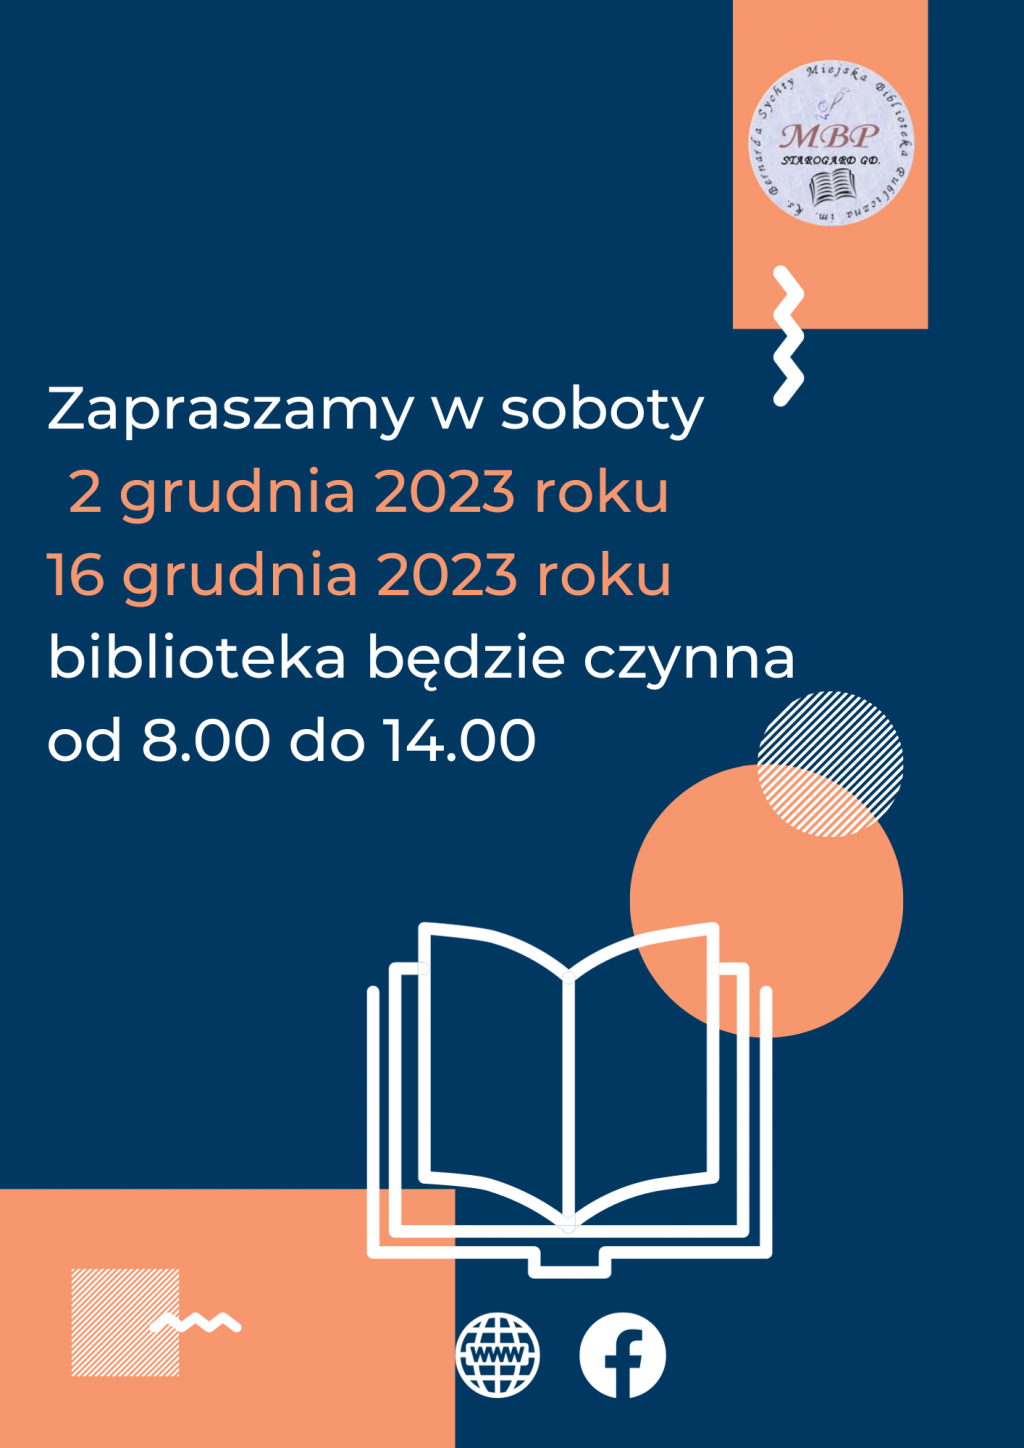 Plakat informujący o pracujących sobotach: 2 grudnia 2023 i 16 grudnia 2023 roku, biblioteka będzie czynna od 8.00 do 14.00. Miejska Biblioteka Publiczna w Starogardzie Gdańskim.